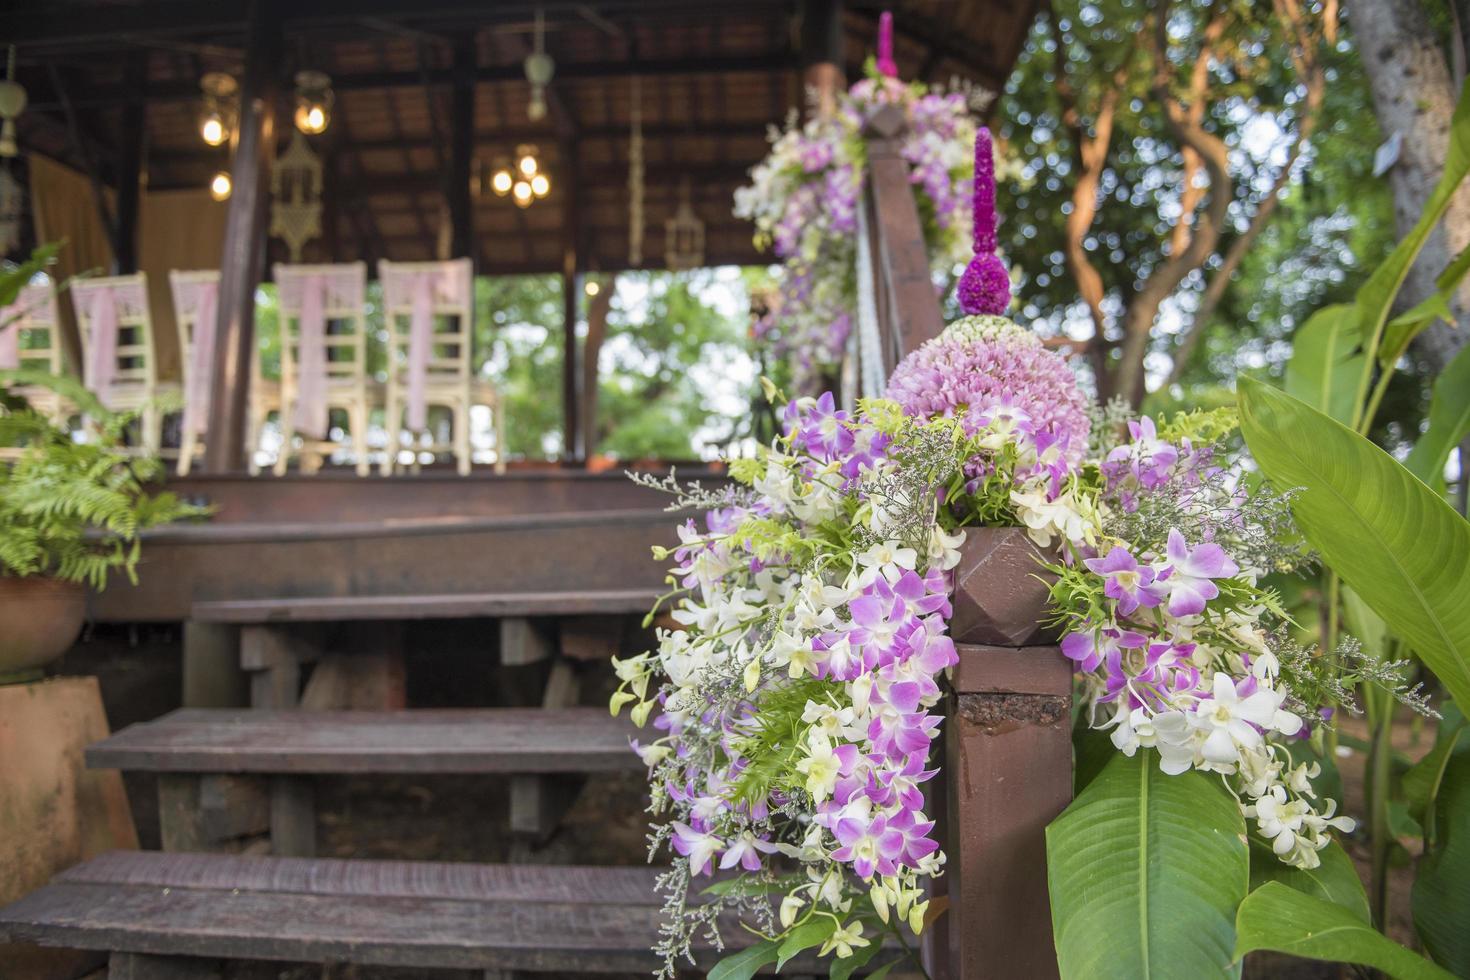 decoração de casamento tailandês foto